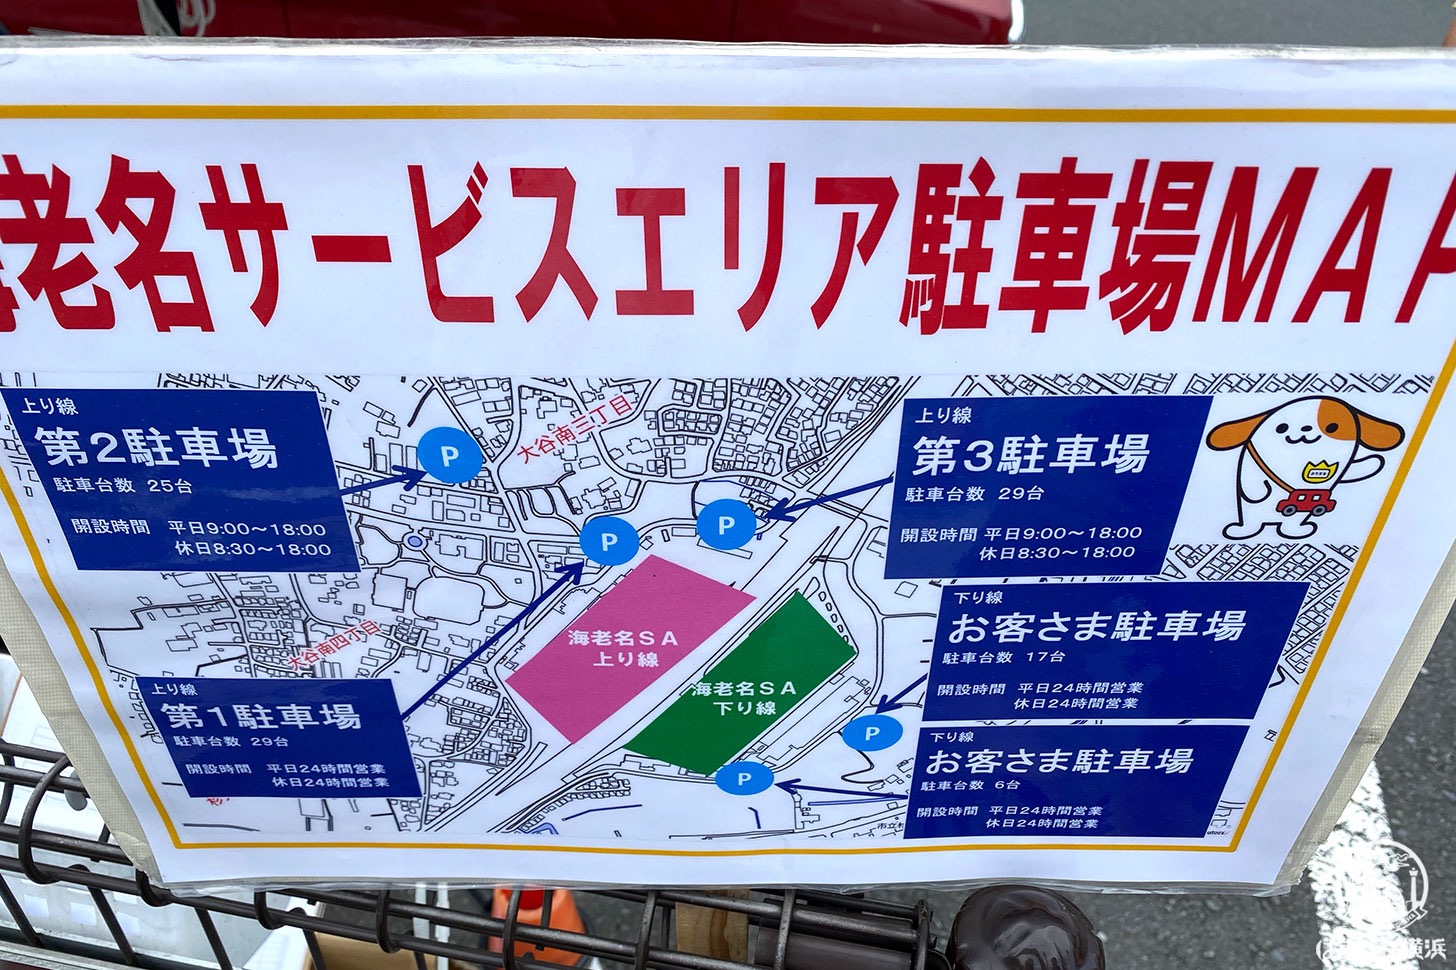 海老名サービスエリアに高速乗らず一般道で行く ぷらっとパーク 使ってみた はまこれ横浜